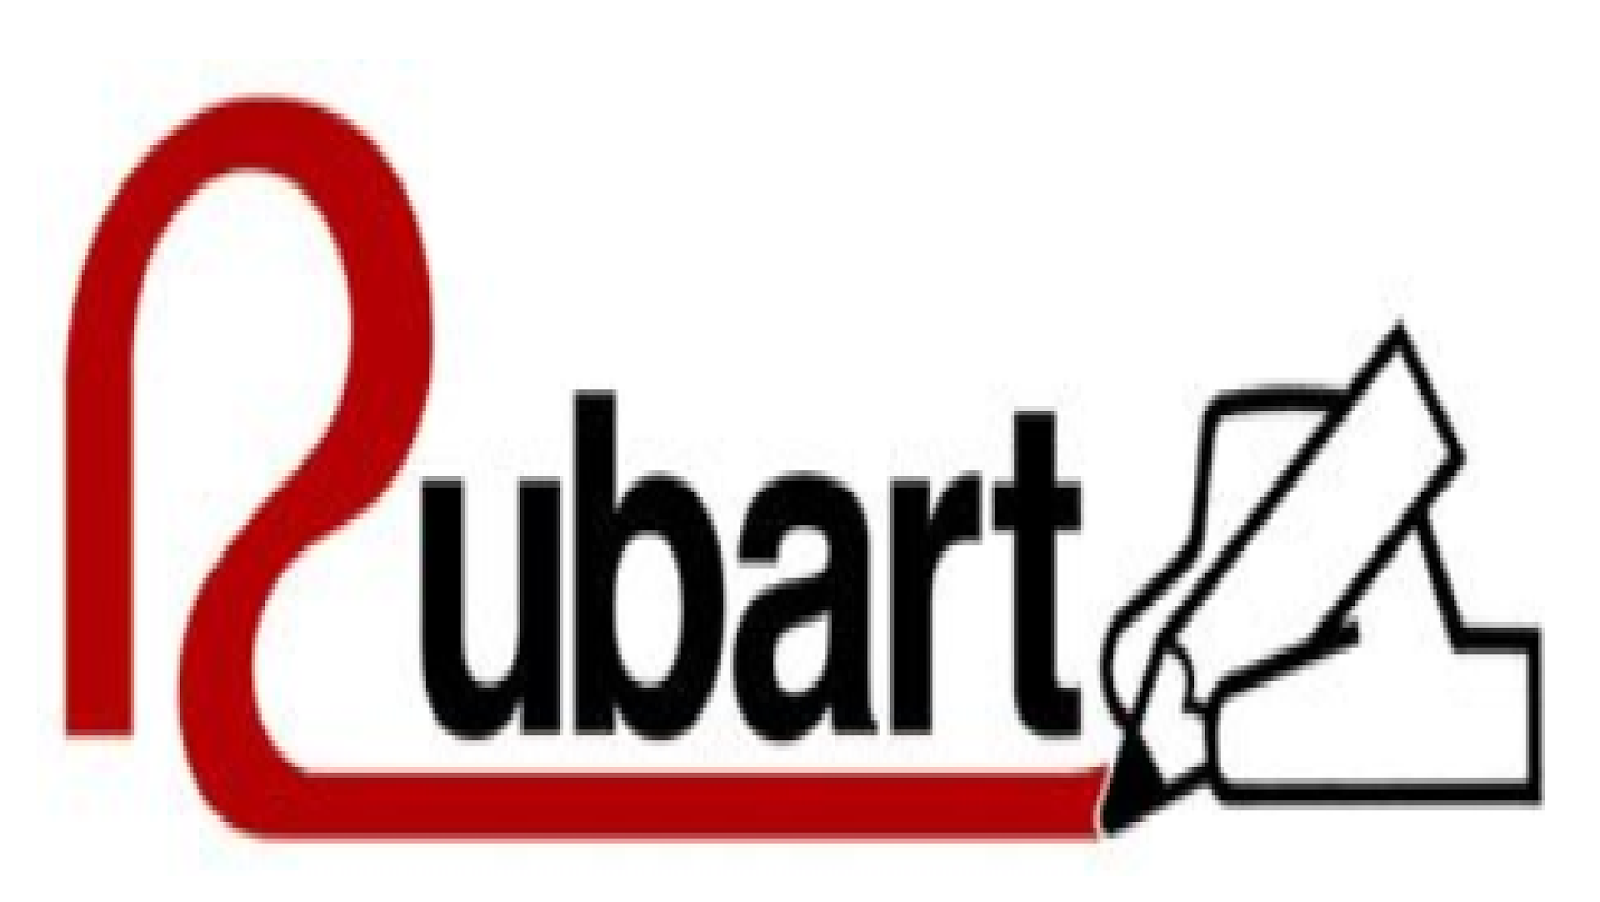 http://rubart-es.blogspot.com.es/